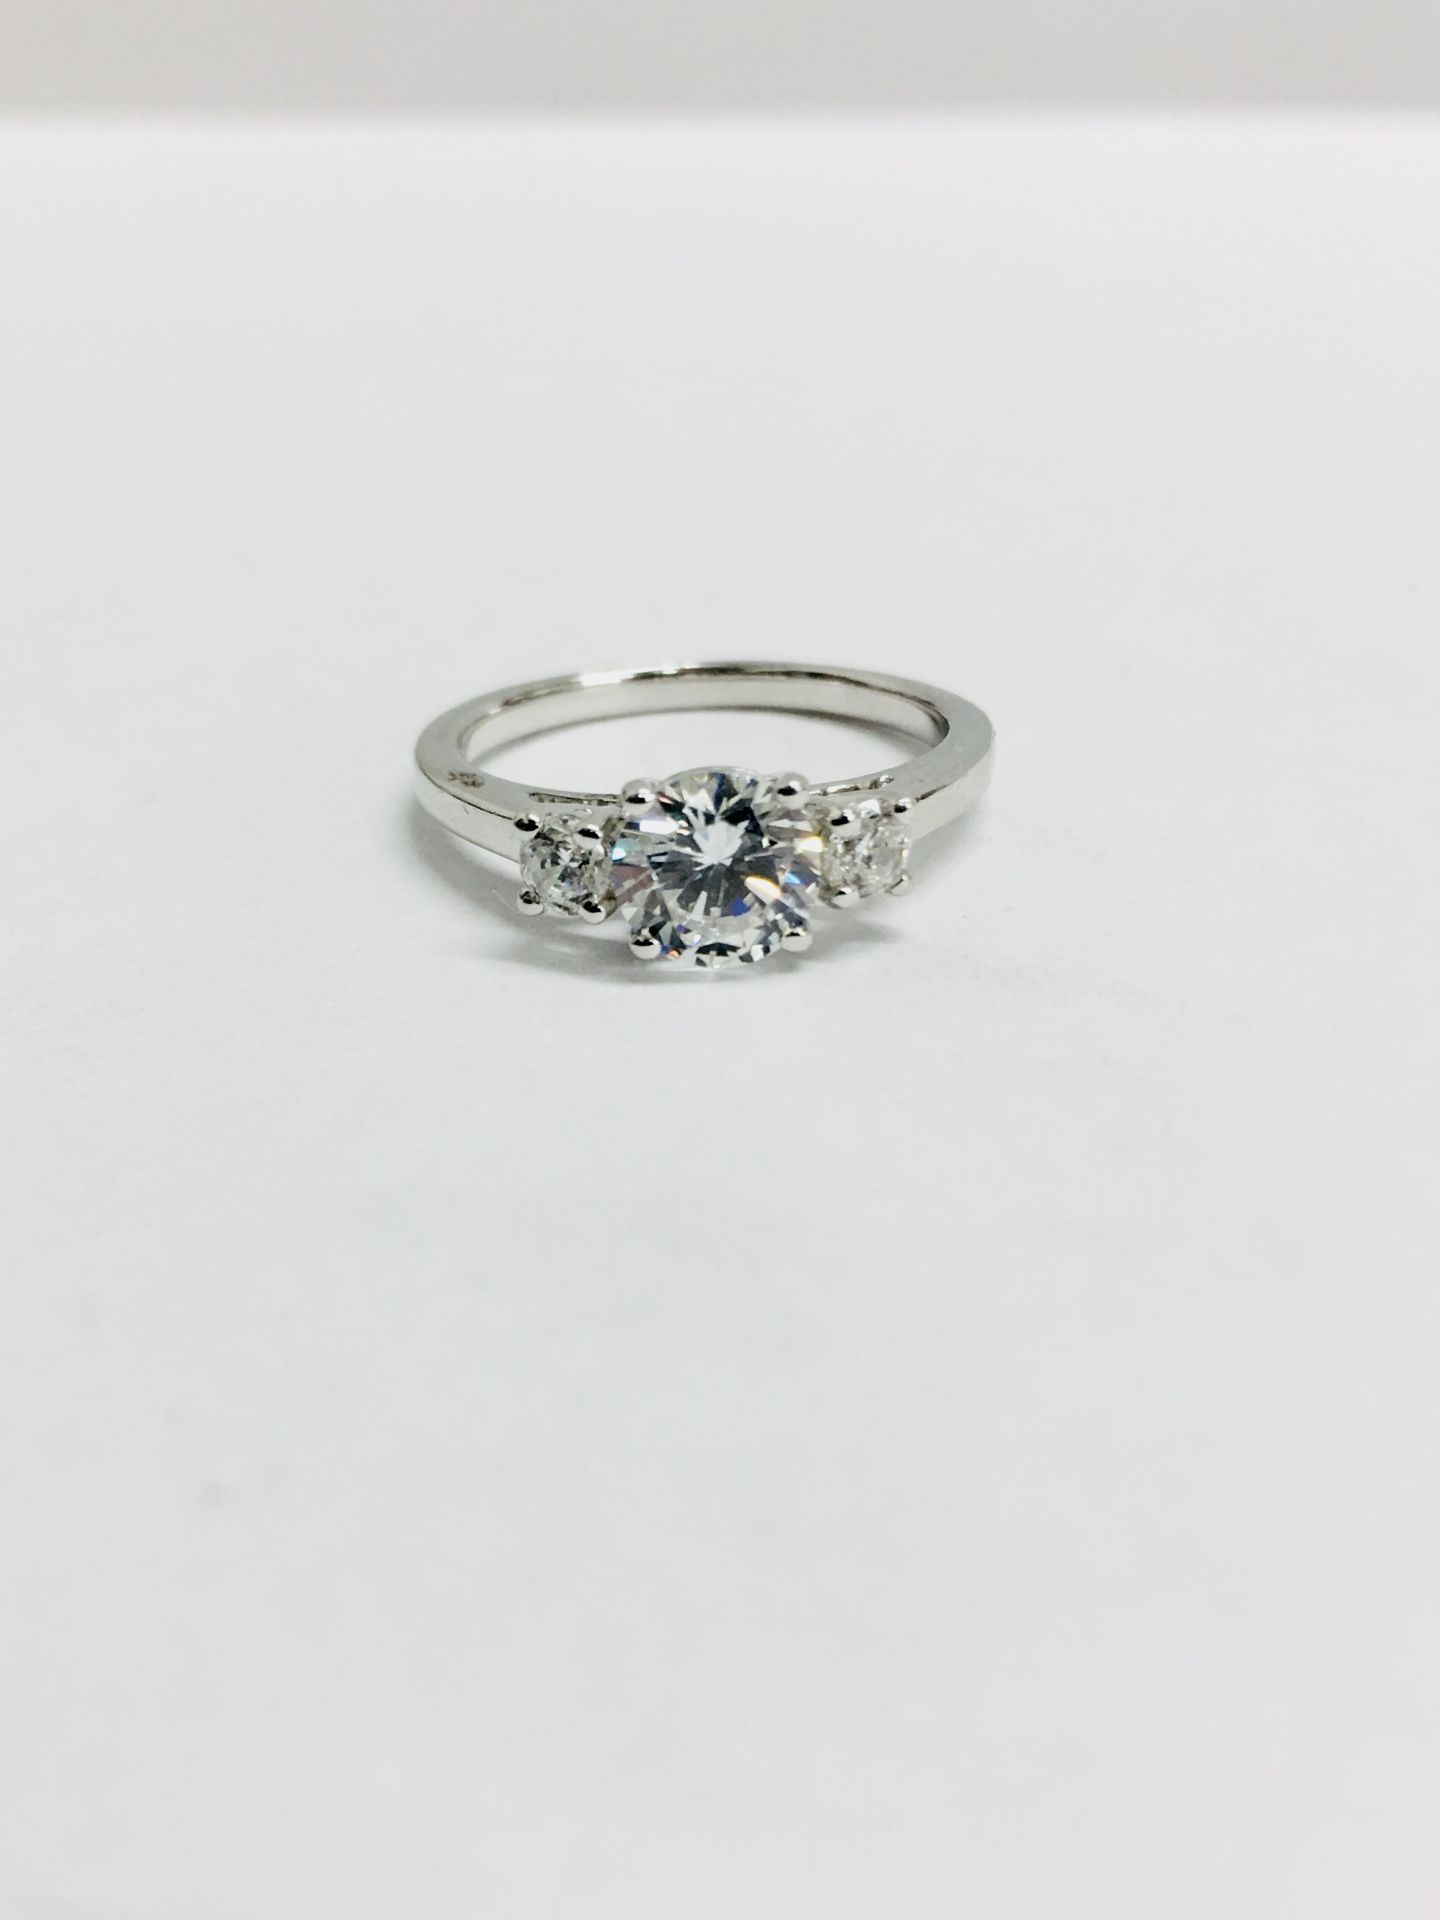 Platinum diamond three stone Ring,0.50ct brilliant cut diamond centre vs clarity H colour,two 0.10ct